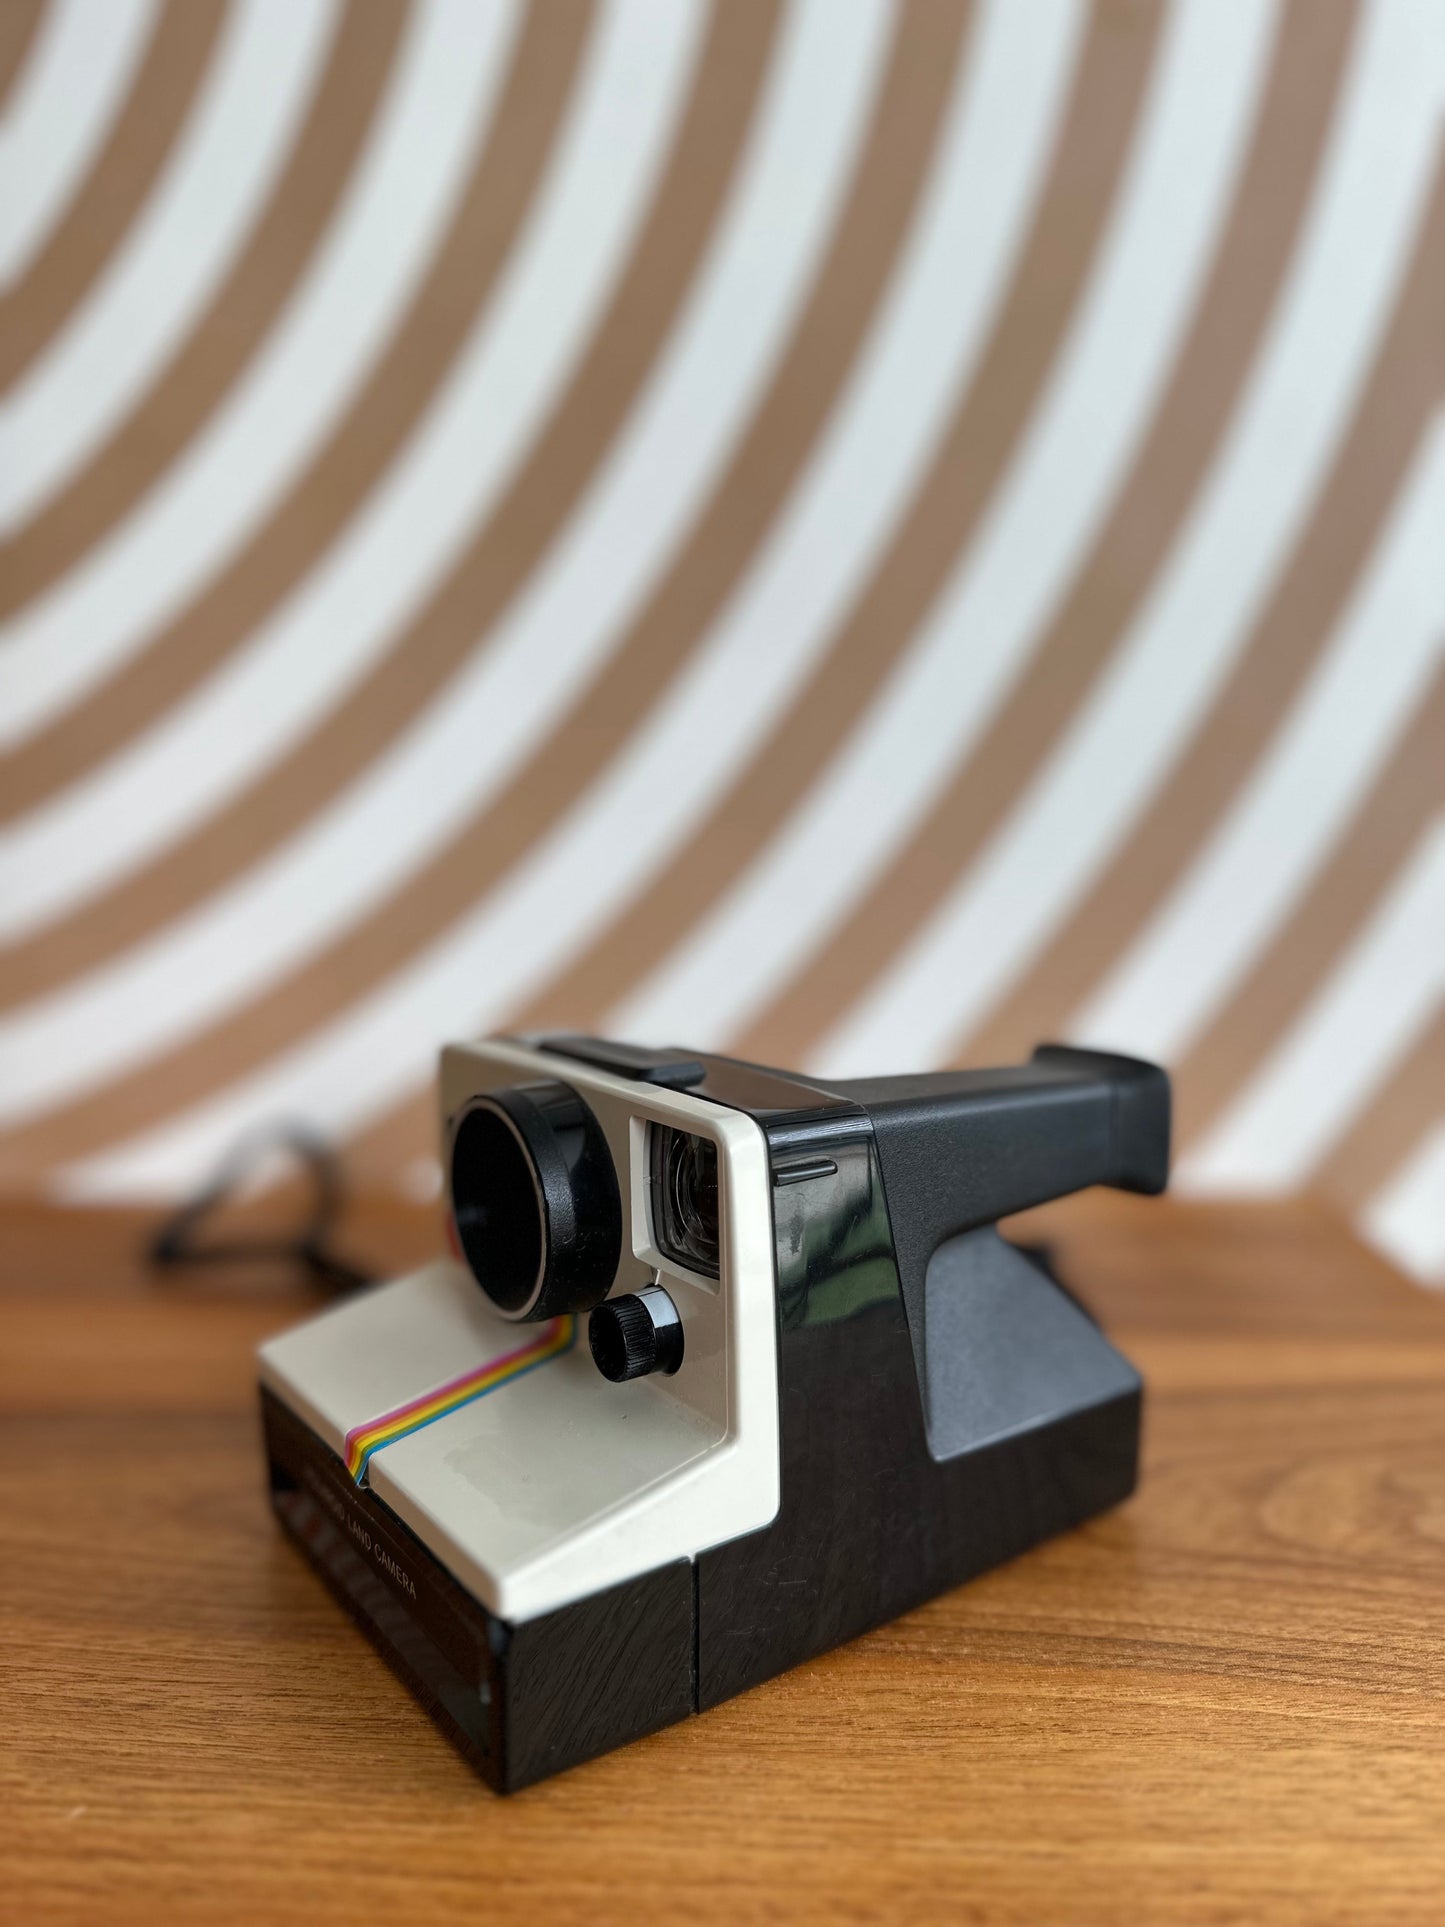 Vintage Polaroid One Step Camera